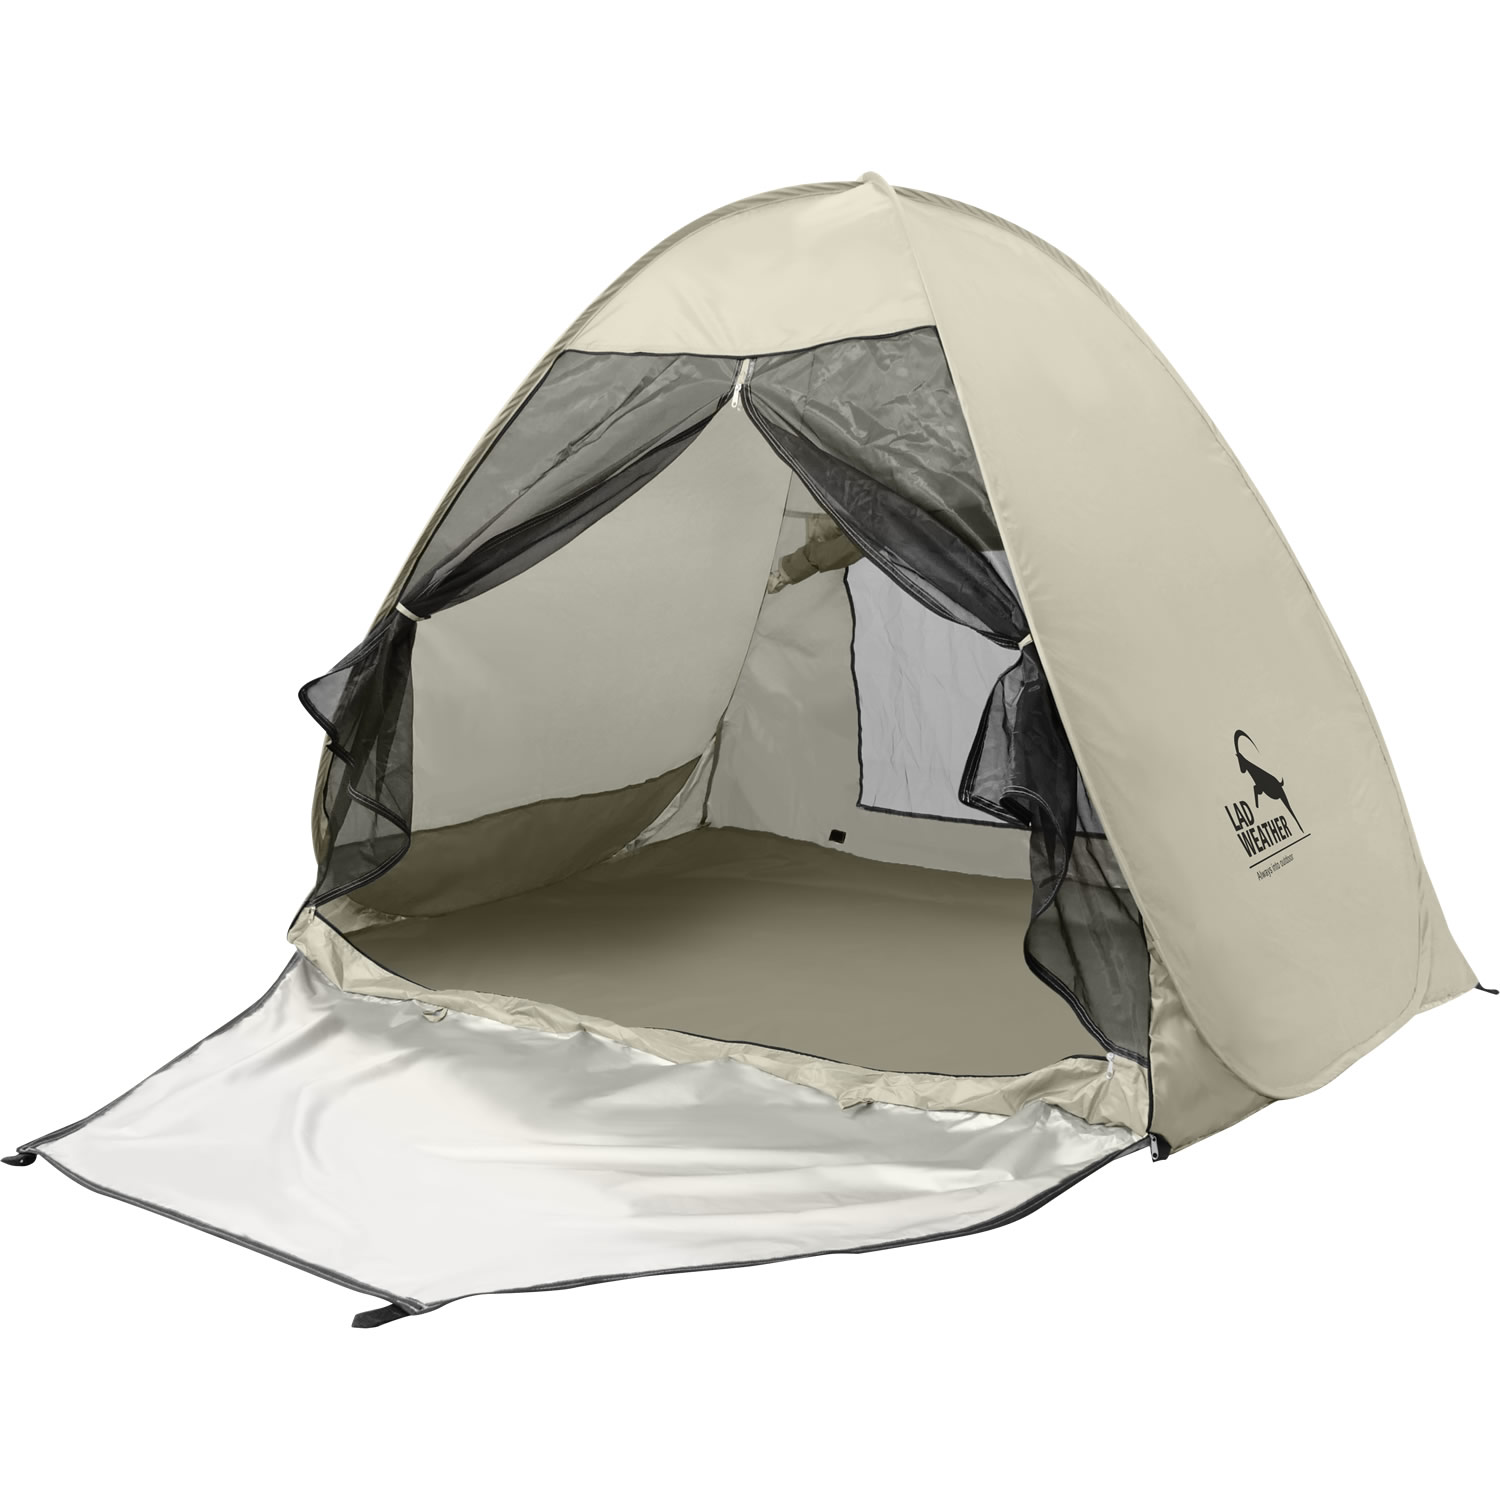 減額 2秒で組立 簡単テント キャンプ テント1-2人用 超軽量1.8kg 防水